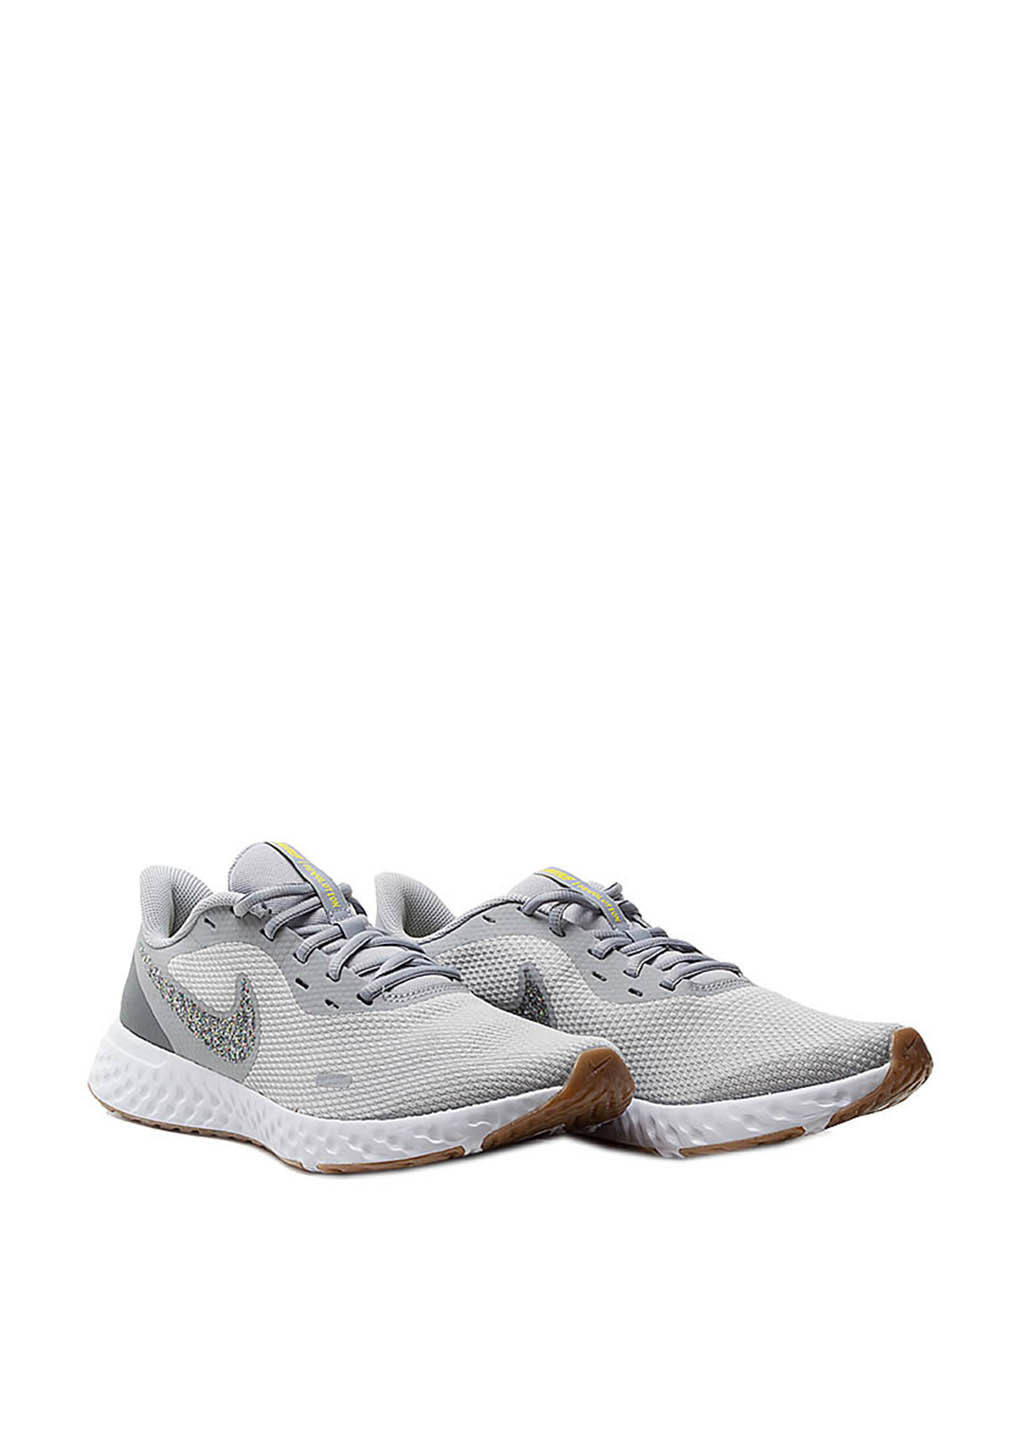 Светло-серые всесезонные кроссовки Nike Revolution 5 Premium